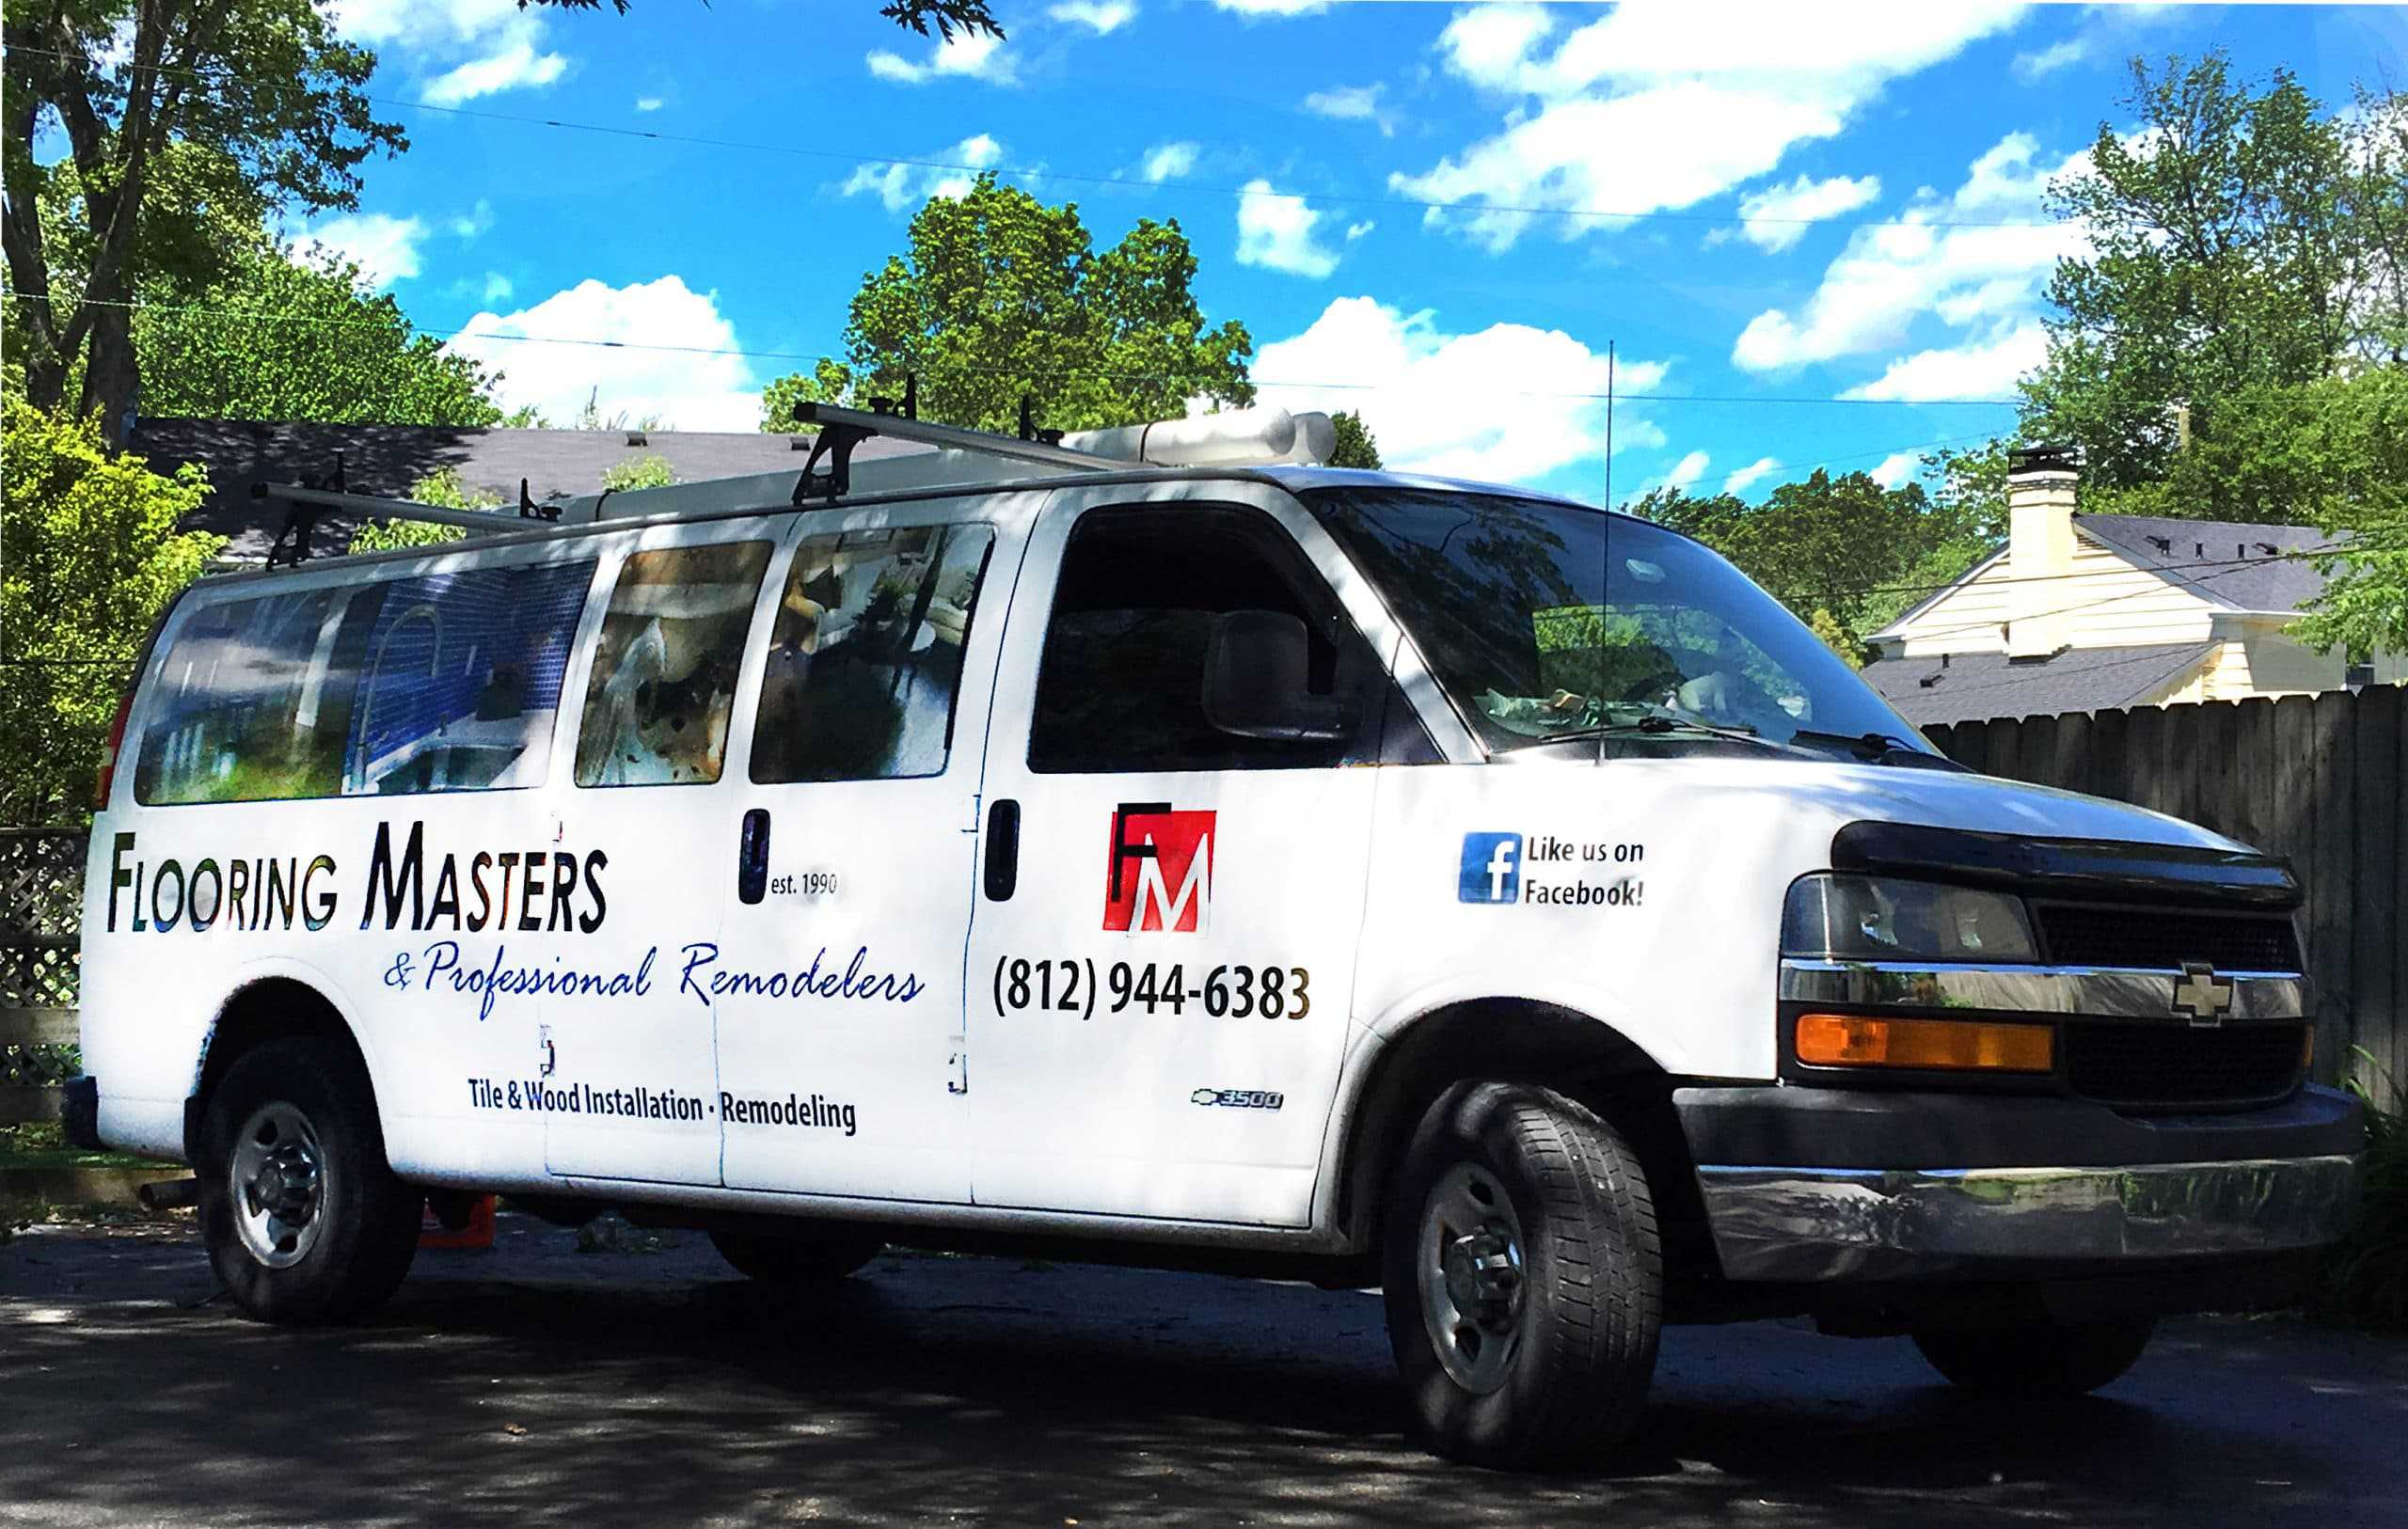 Flooring Masters & Professional Remodelers Work Van